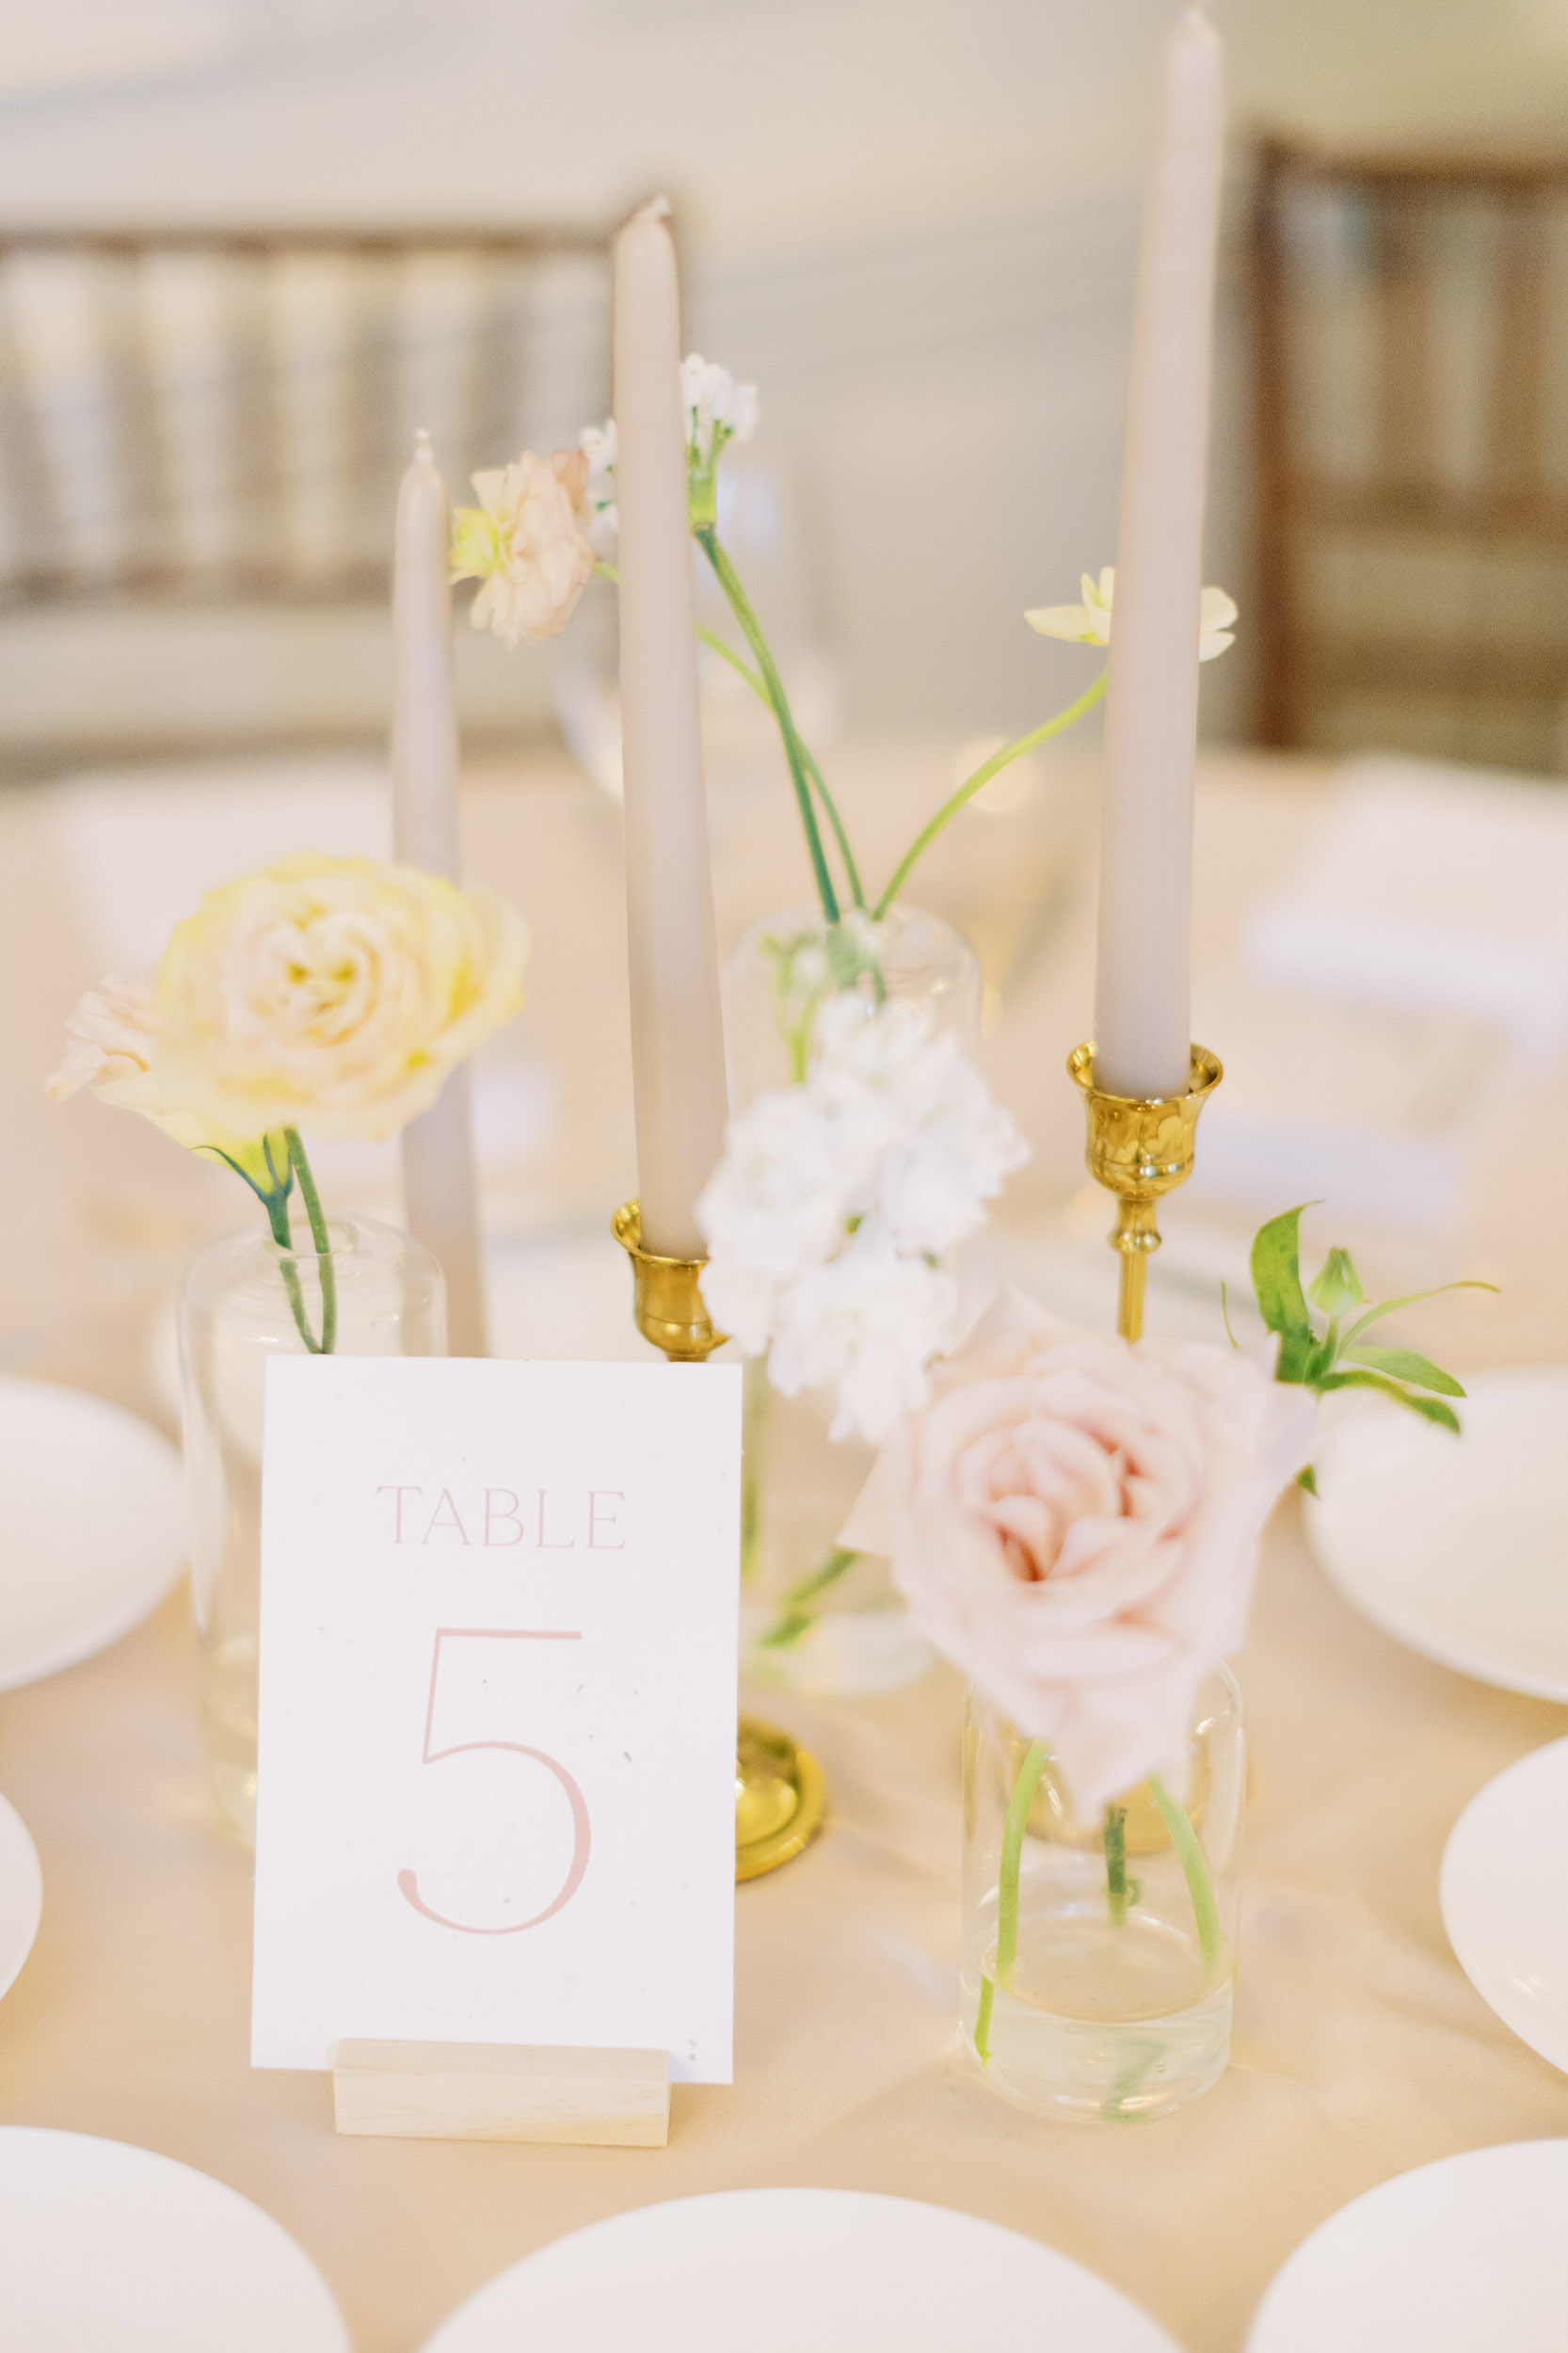 Kendon Co Design floral arrangement on table